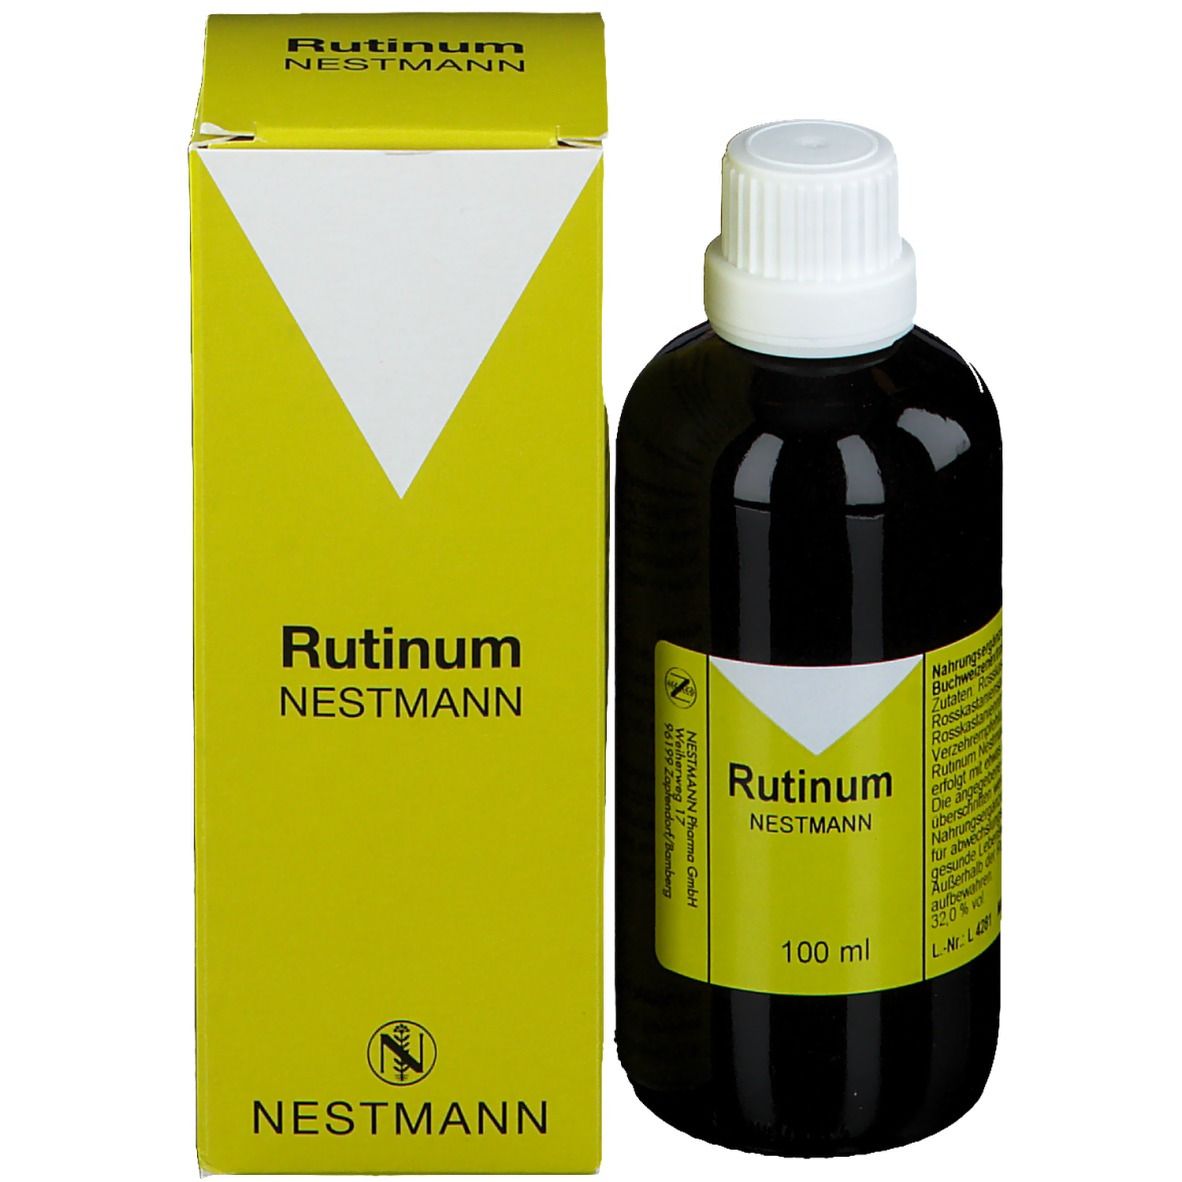 Rutinum Nestmann